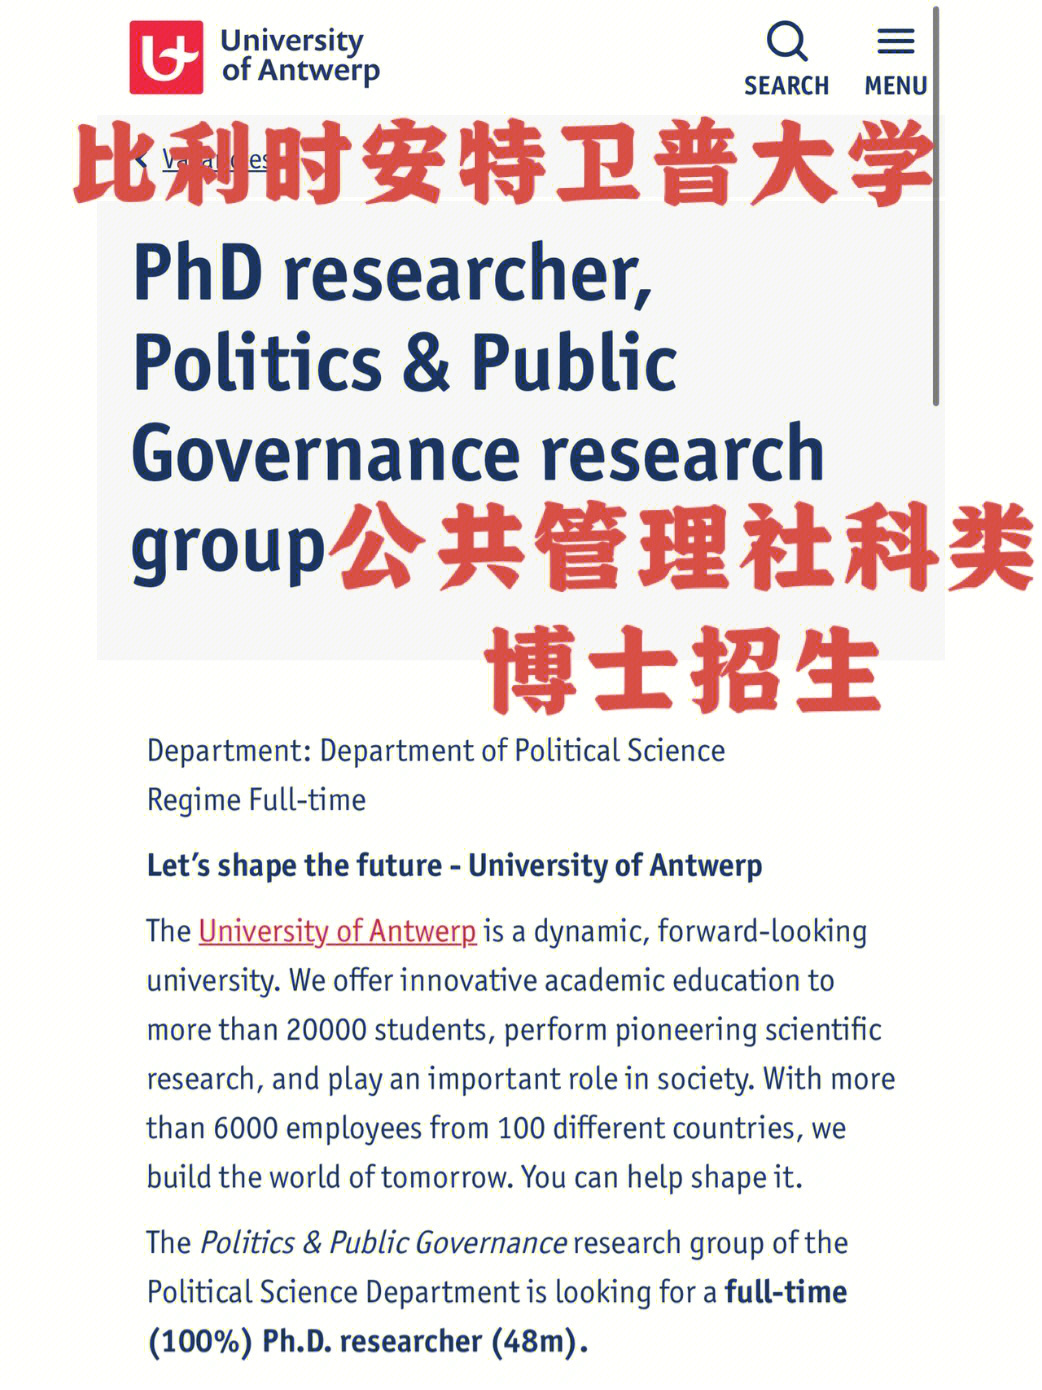 在上海软科排名,安特卫普大学公共管理排比利时第一,世界前20,十分有